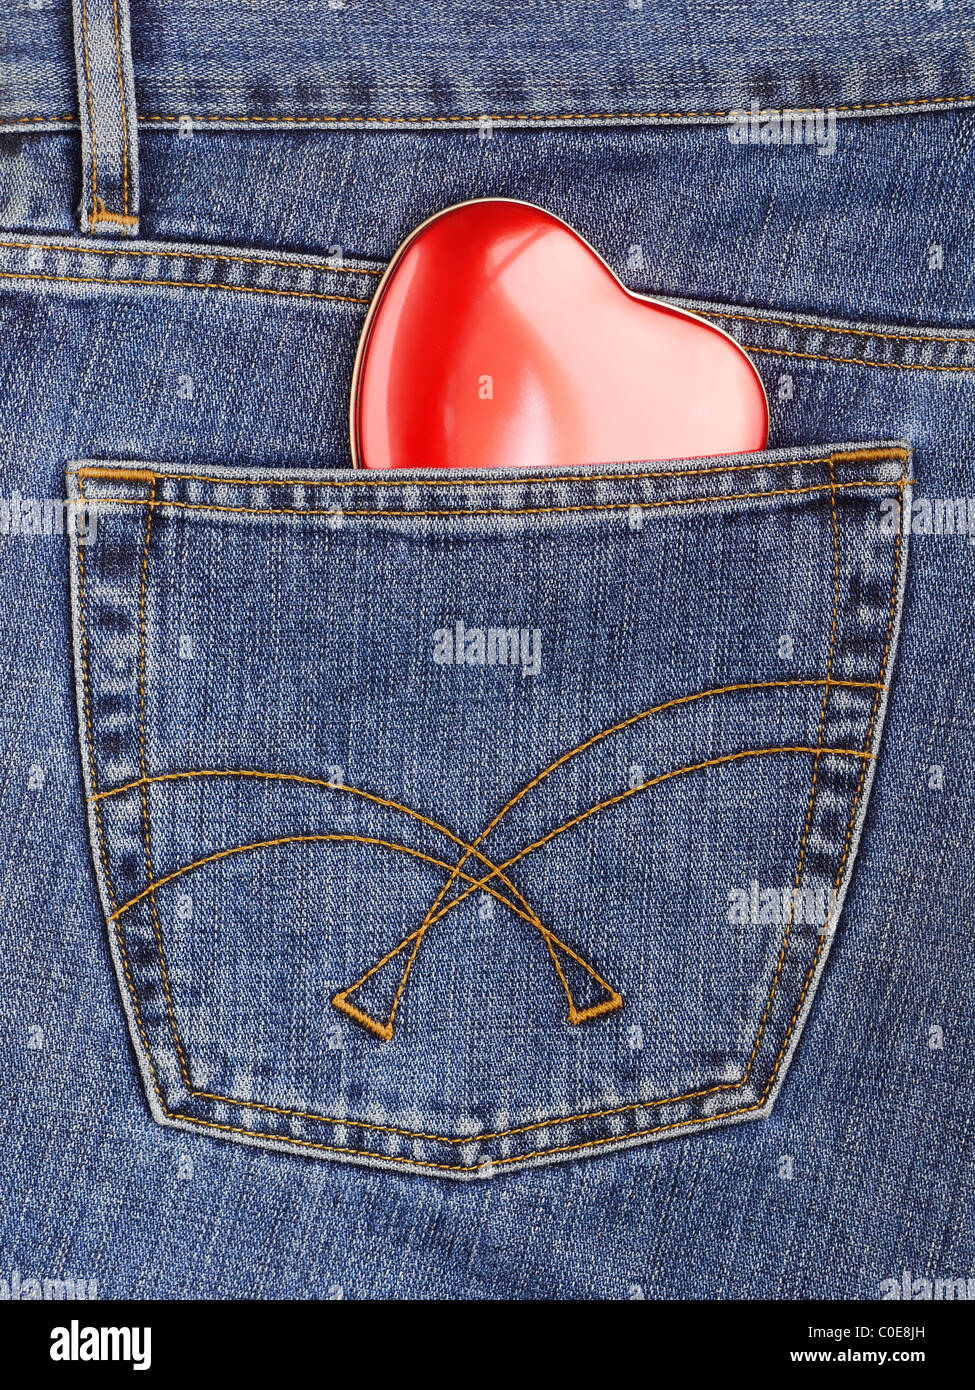 Coeur rouge dépassant de la poche arrière de jeans bleu Banque D'Images